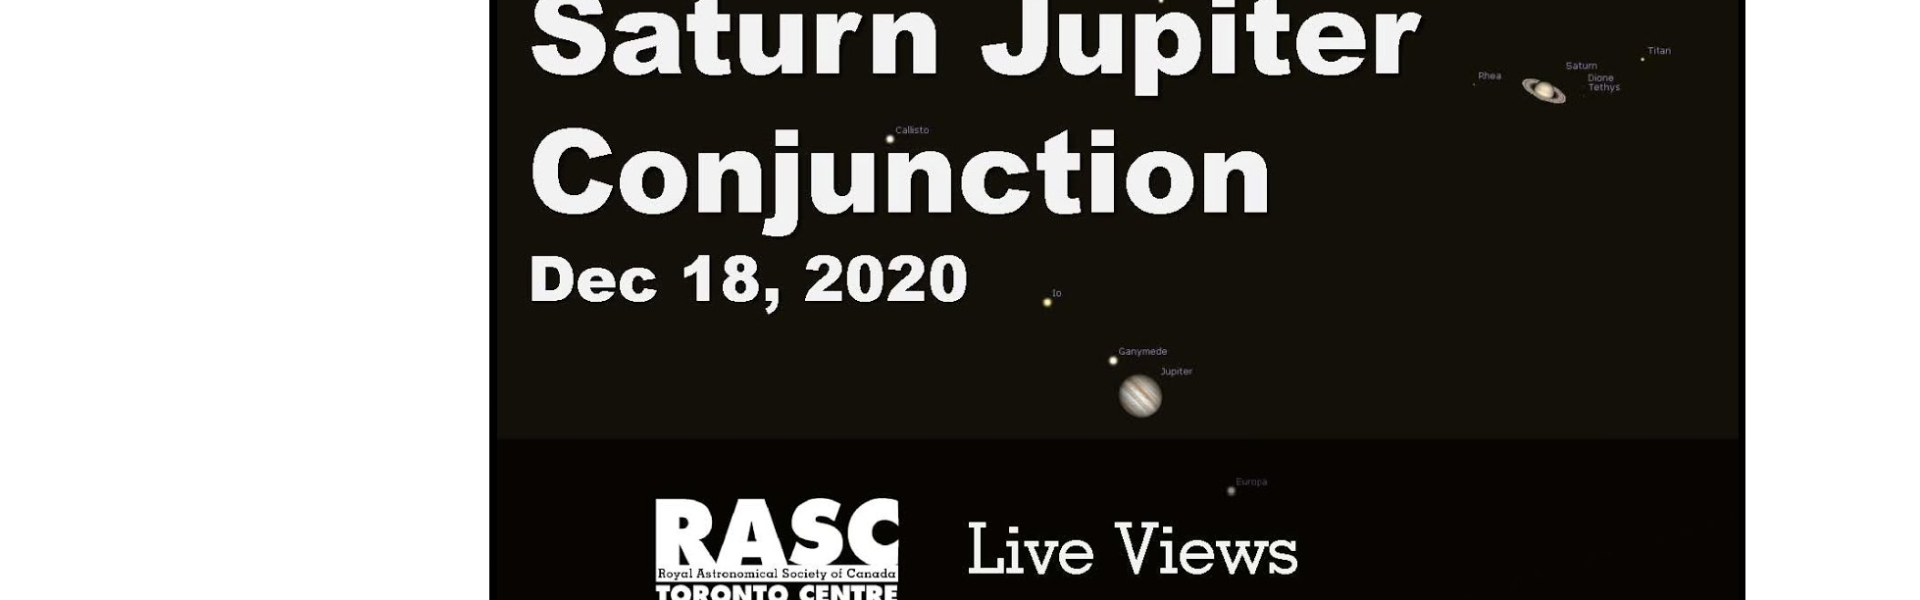 Saturn and Jupiter Conjunction Live, December 18, 2020